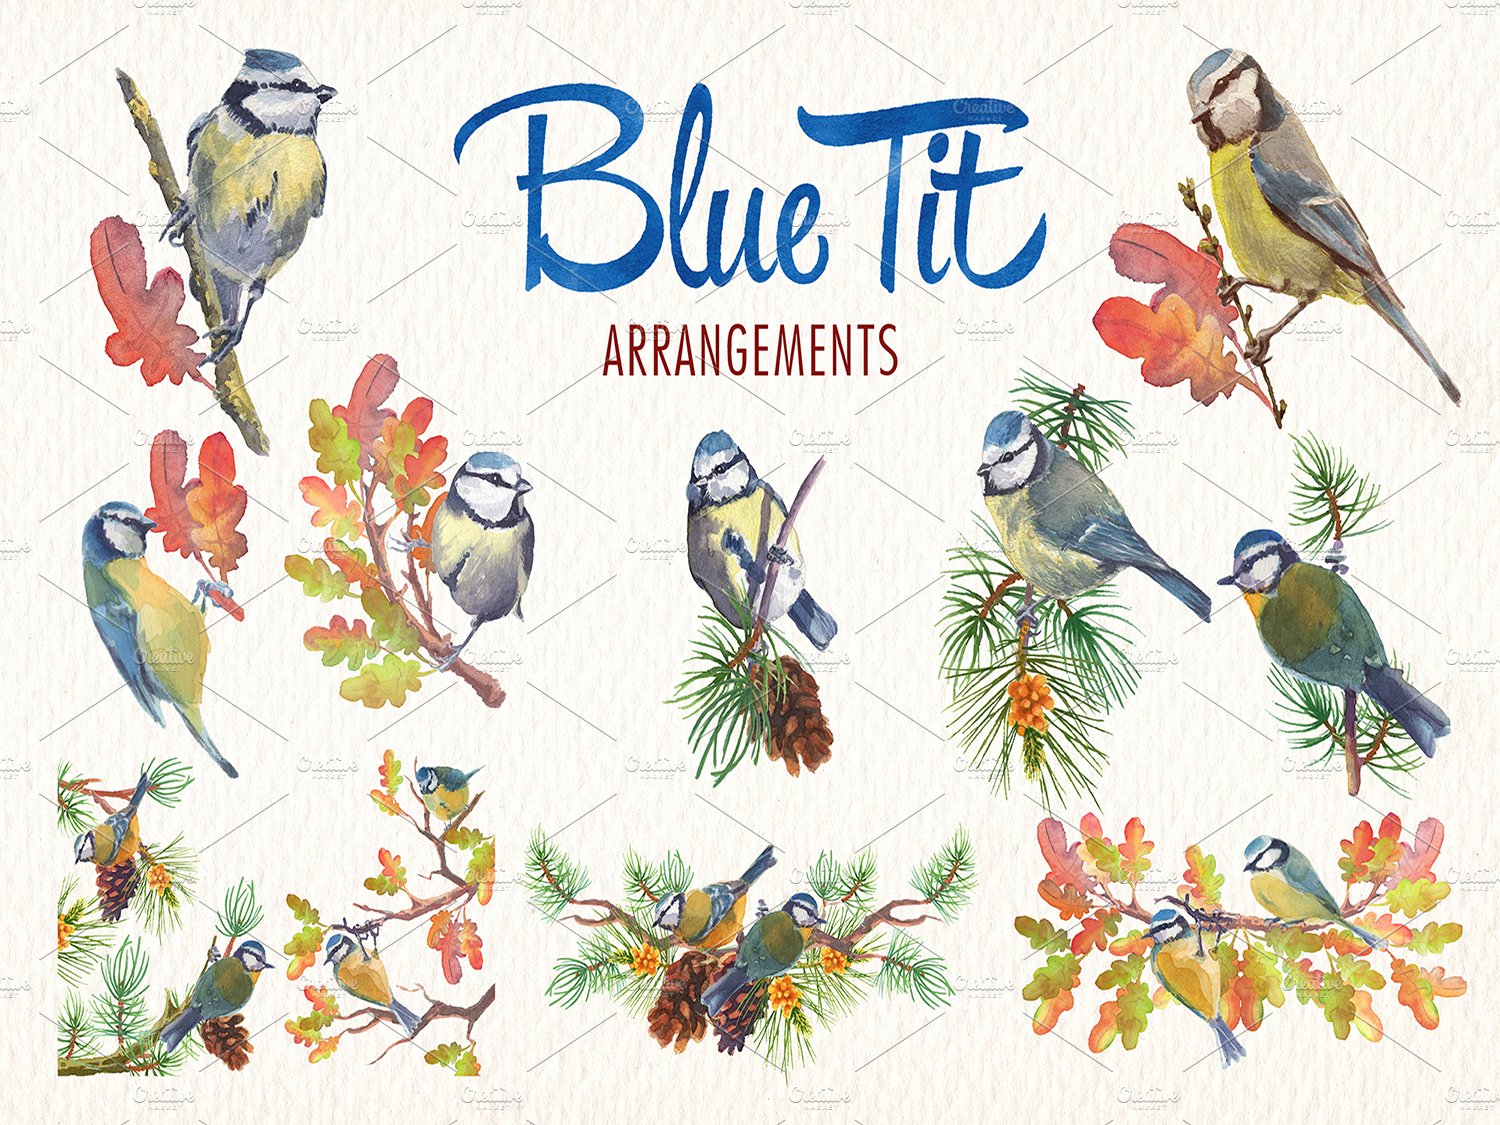 blue tit arrangements 73